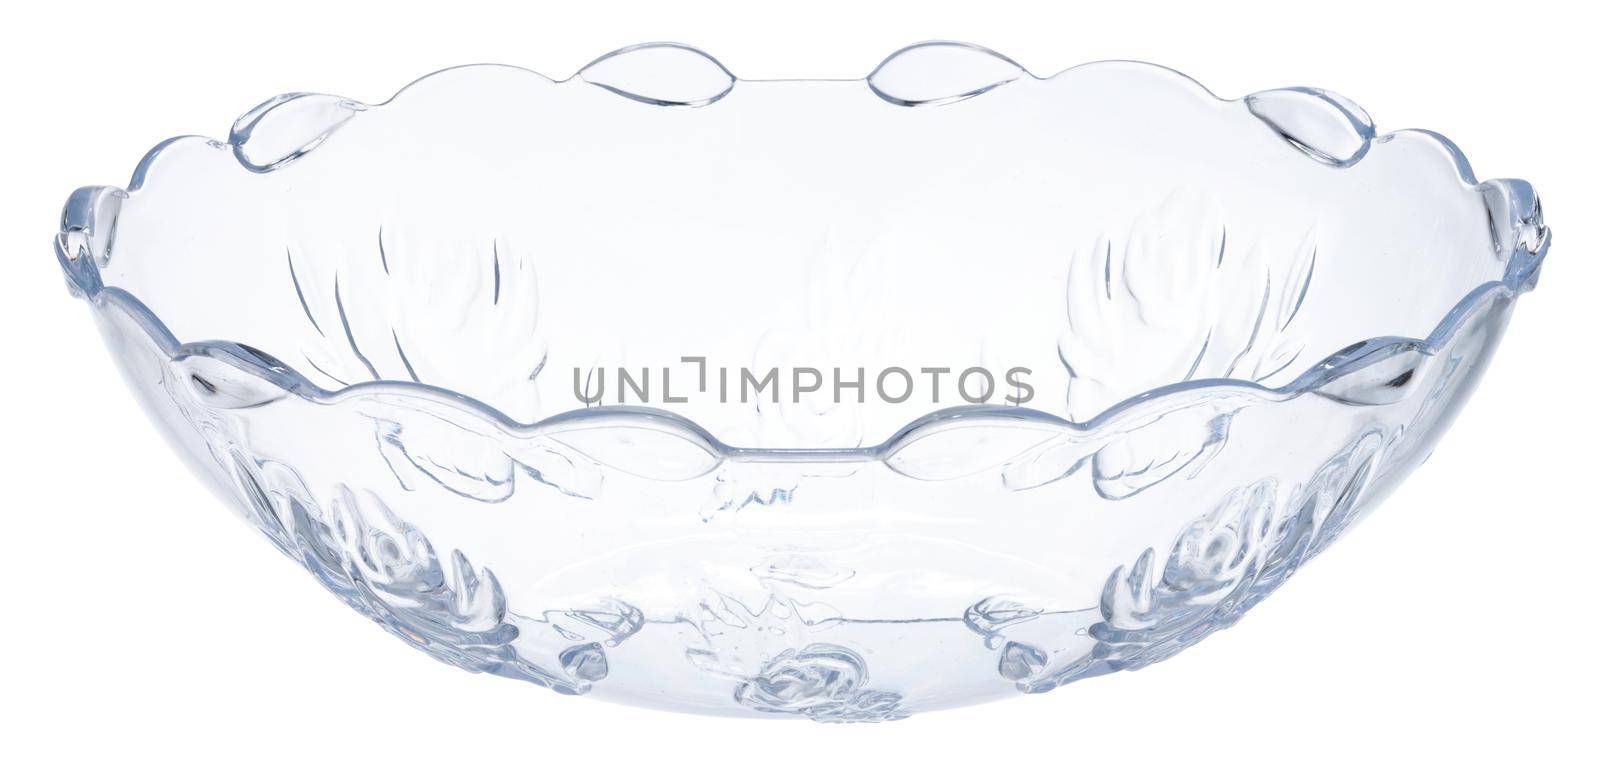 Stylish glass bowl dishware isolated on white by Fabrikasimf